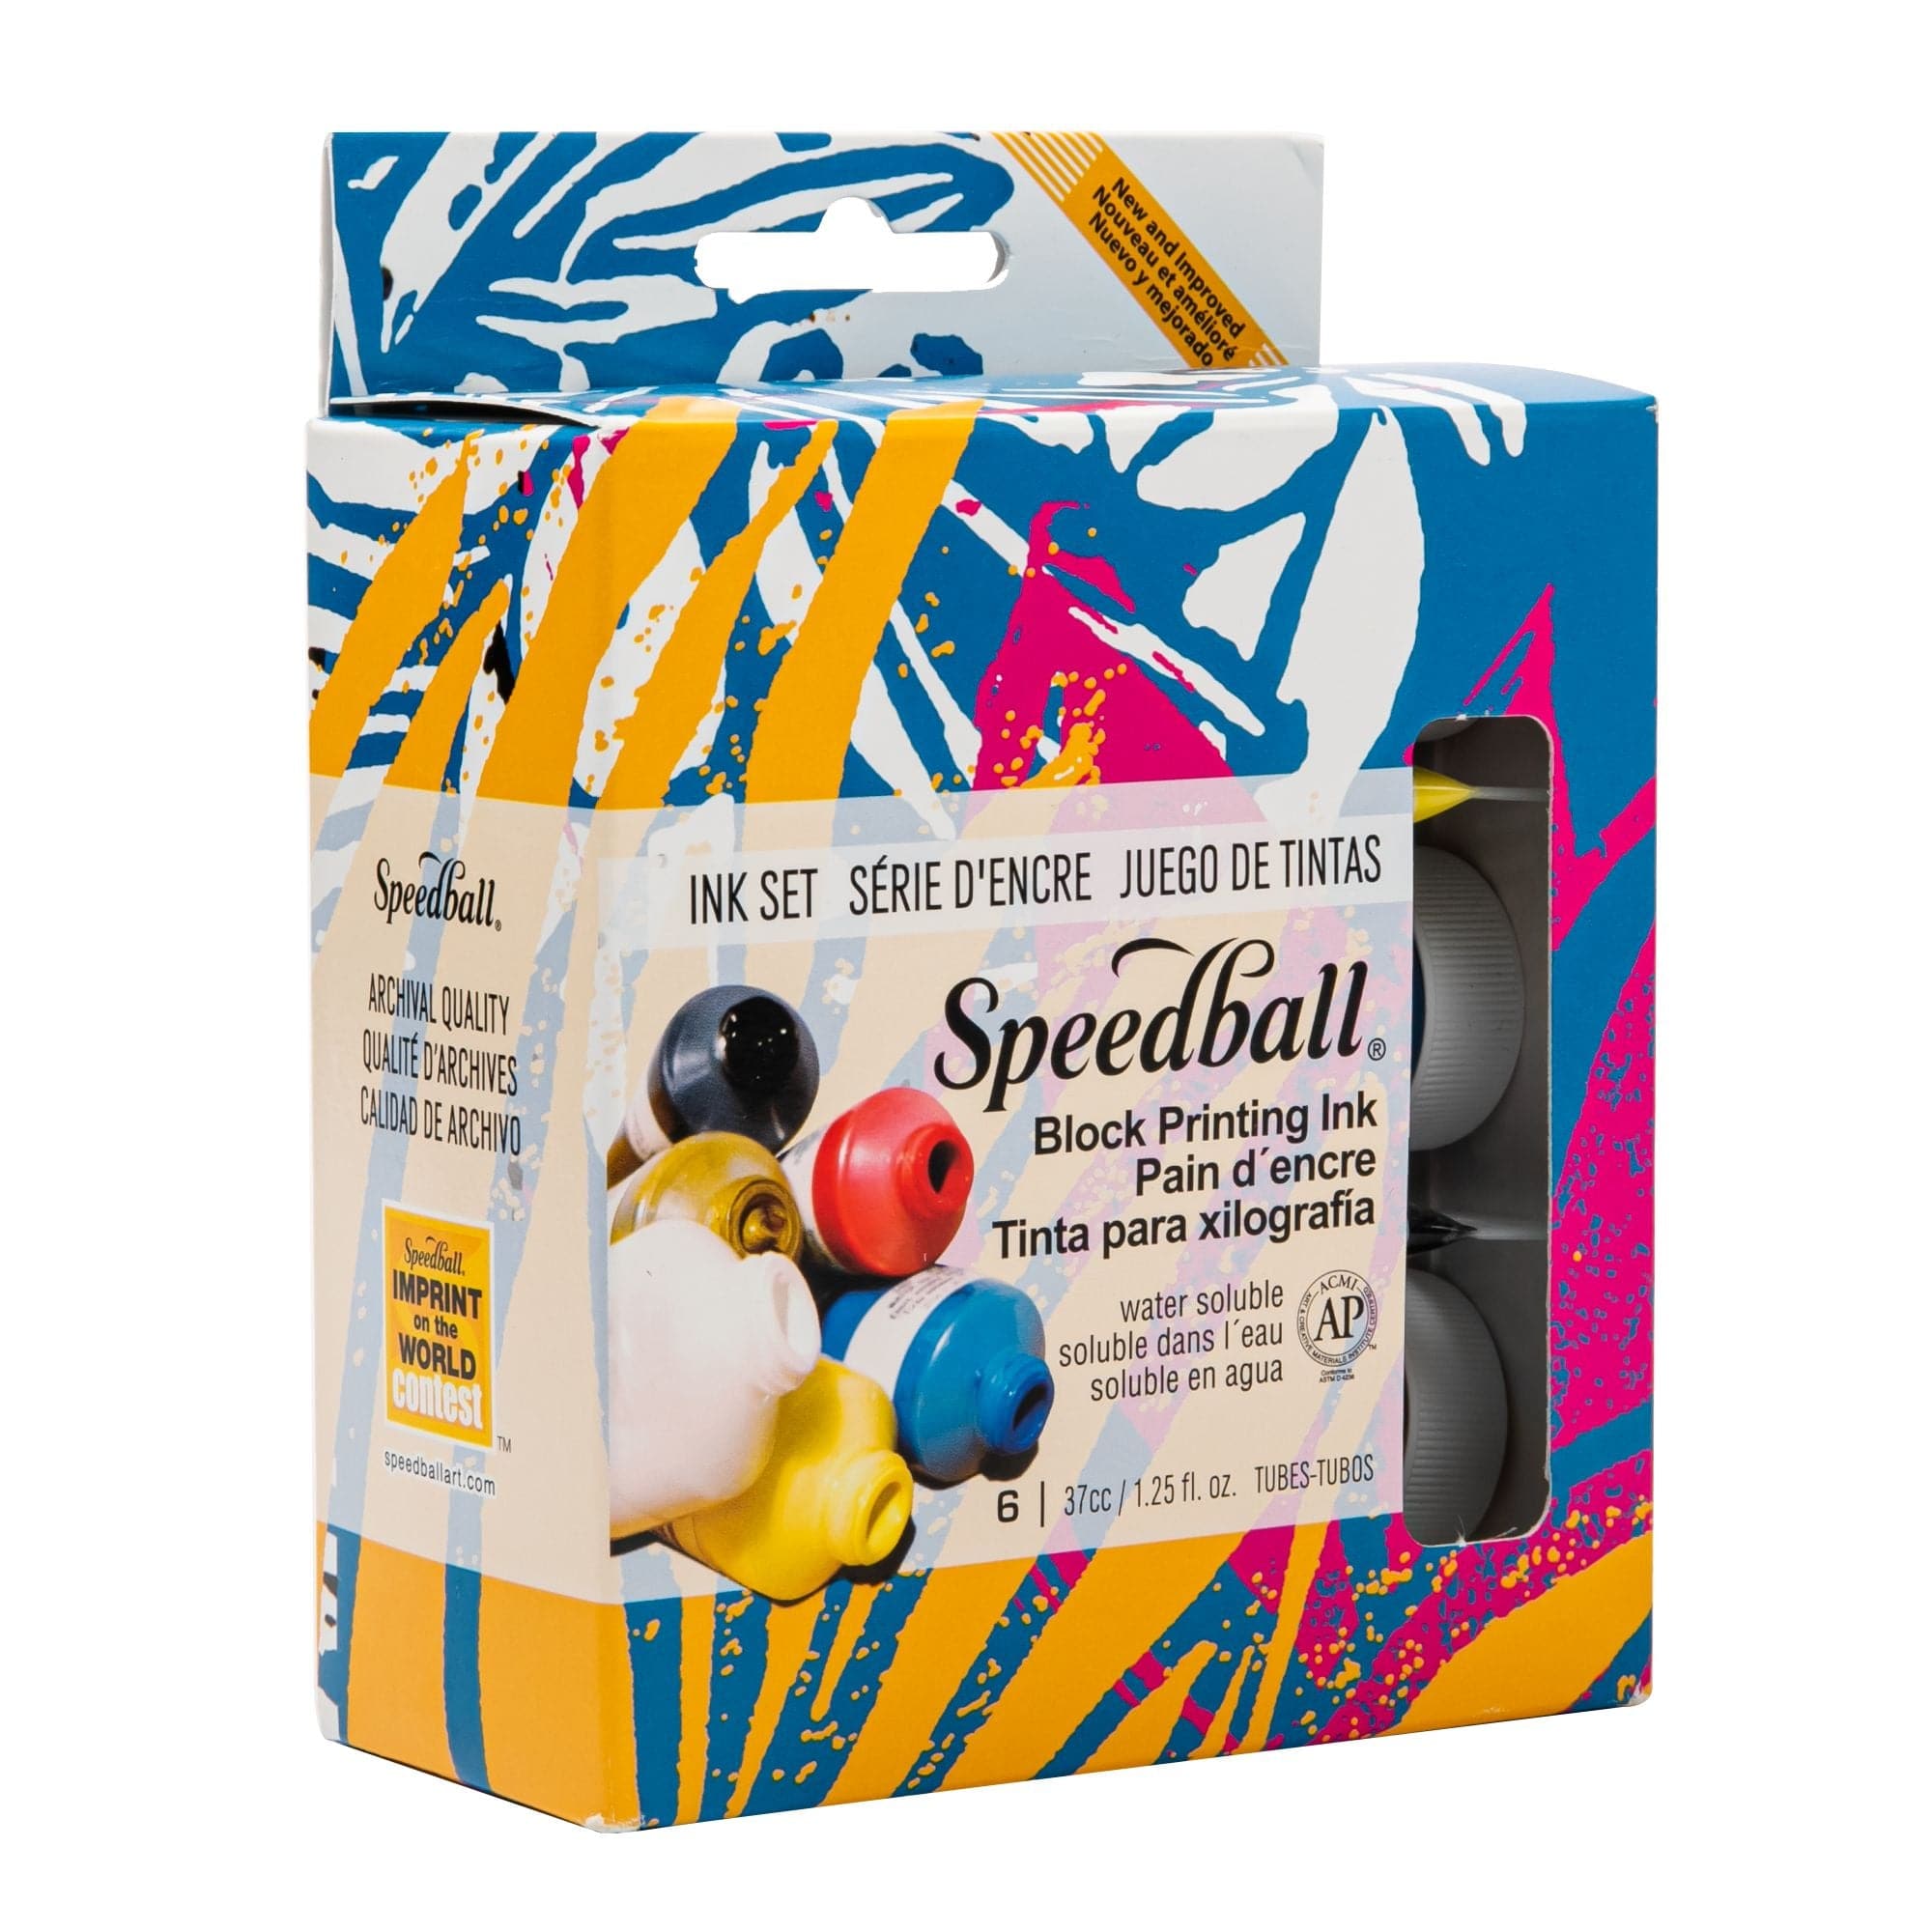 Speedball Oil Based Block Printing Ink, White - 5 fl oz tube